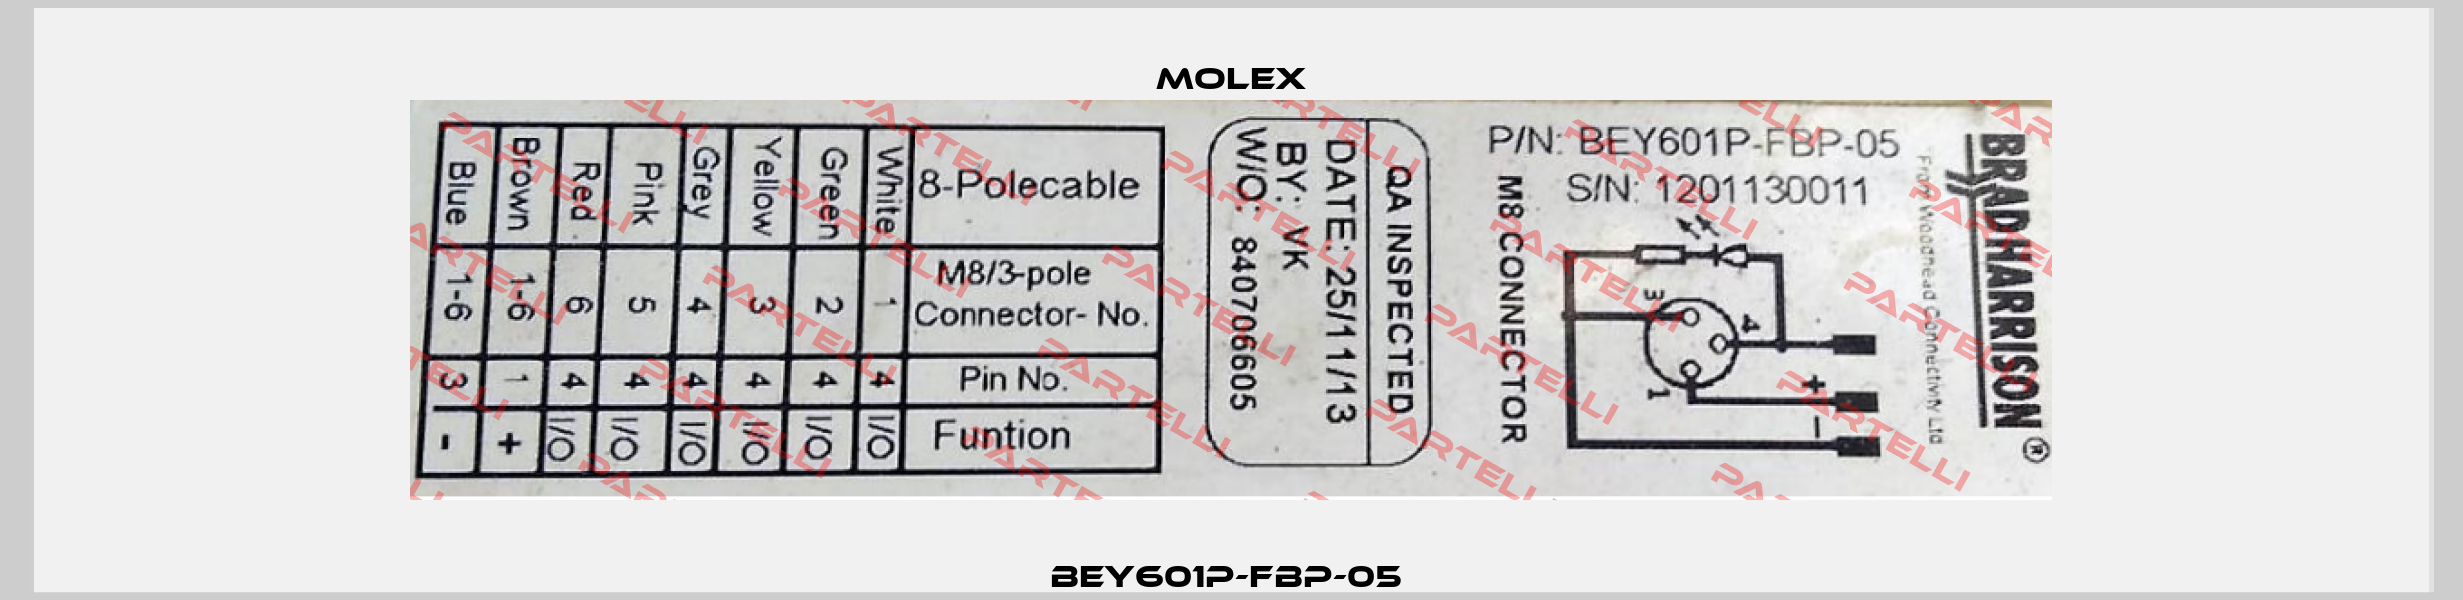 BEY601P-FBP-05  Molex